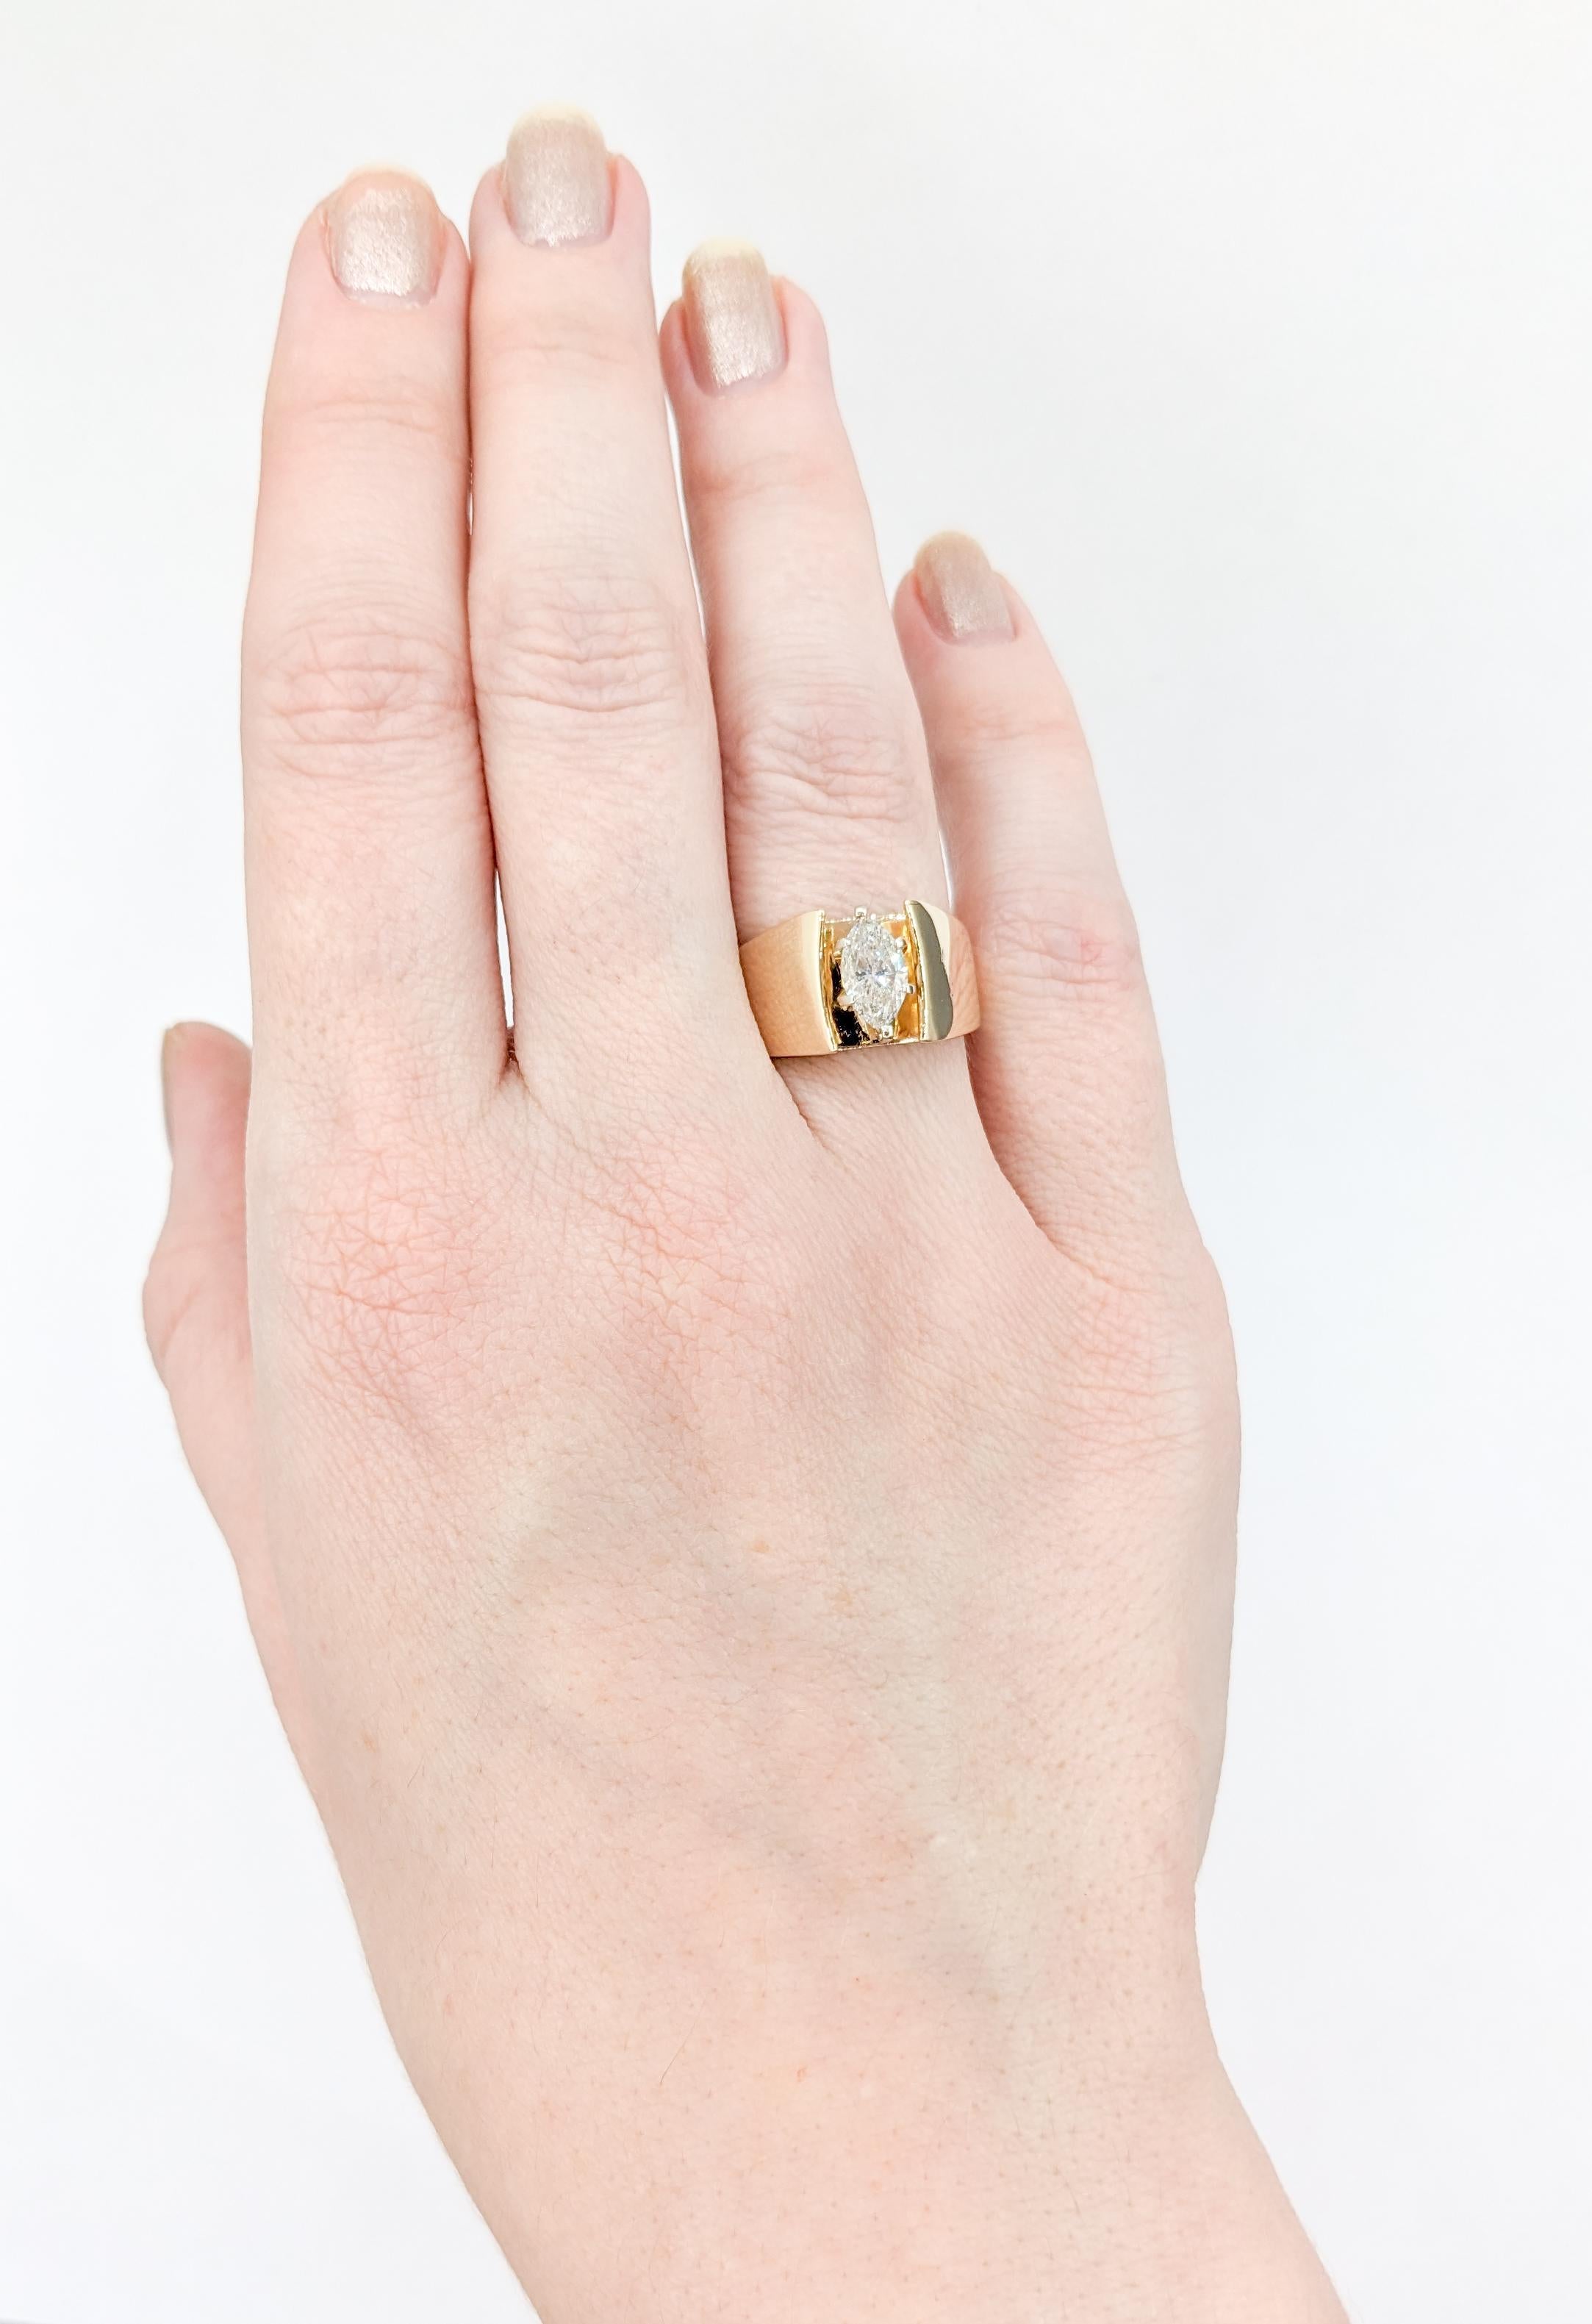 Solitär-Ring aus Gold mit Marquise-Diamant im Vintage-Stil

Wir stellen einen atemberaubenden Solitärring vor, der meisterhaft aus 14 Karat Gelbgold gefertigt ist und einen fesselnden Marquise-Diamanten von 0,70 Karat präsentiert. Dieser Brillant